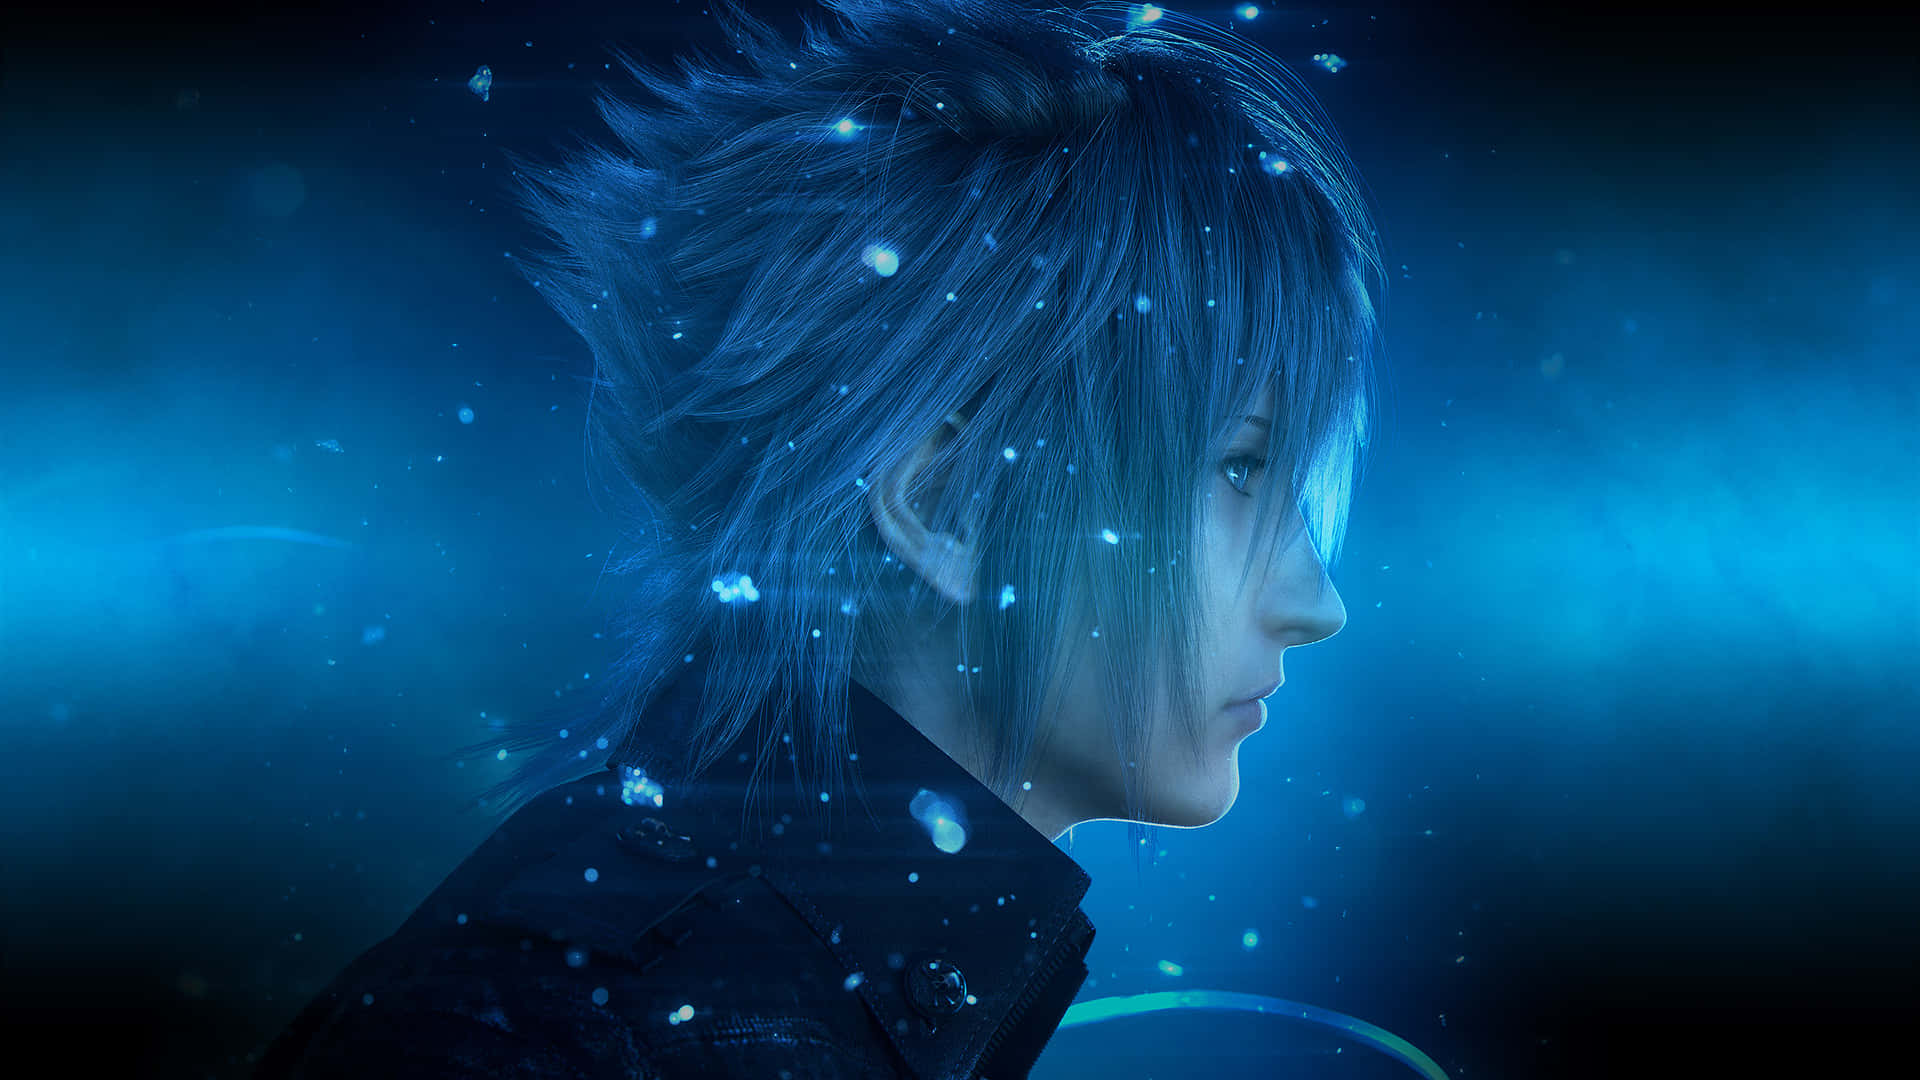 Blåhårignoct Från Final Fantasy Xv Som Bakgrundsbild.